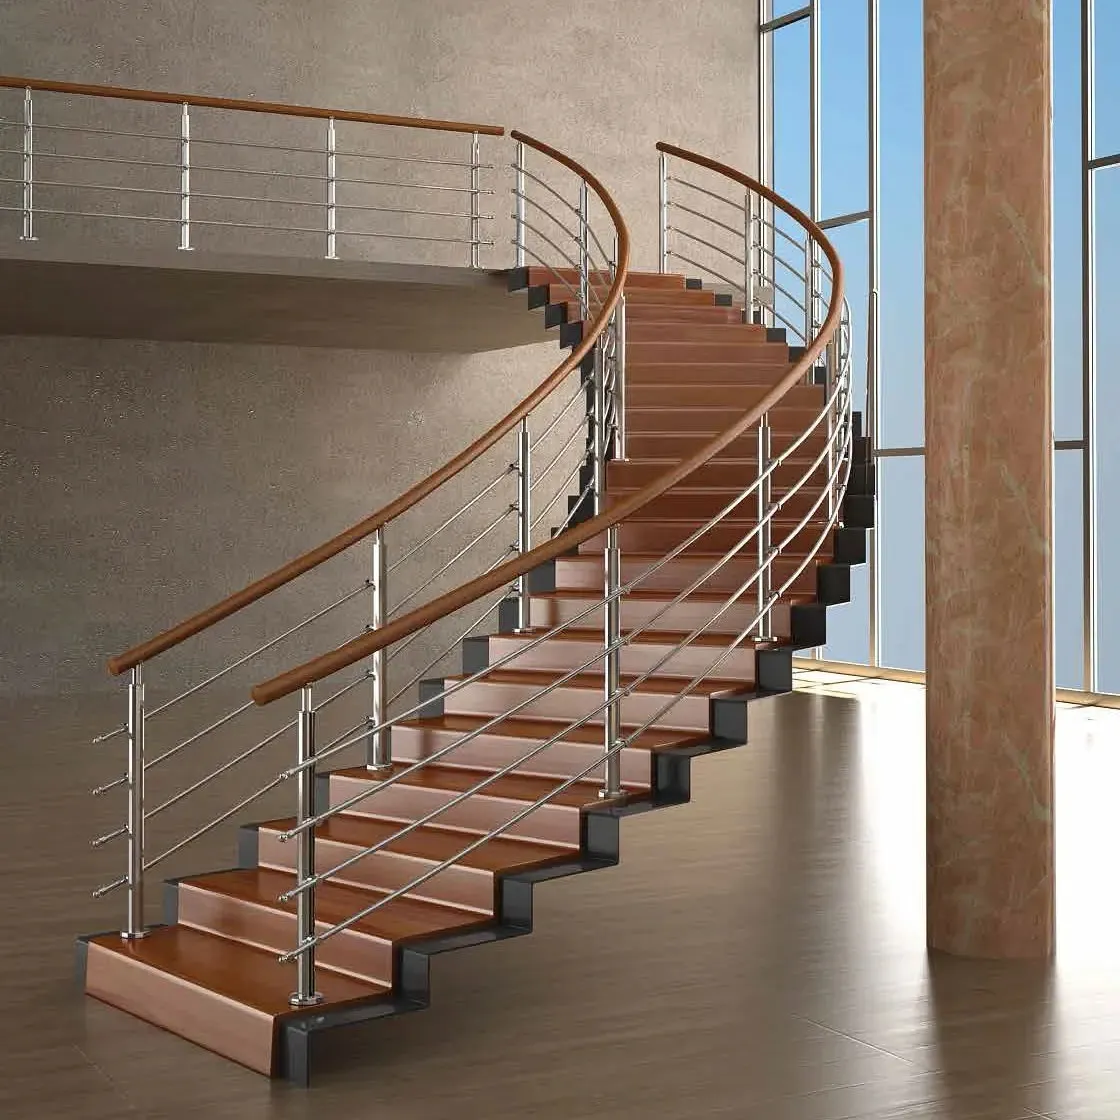 GB meilleure vente intérieure extérieure en acier inoxydable, Balustrades d'escalier balcon main courante escalier balustrade système Balustrades et mains courantes